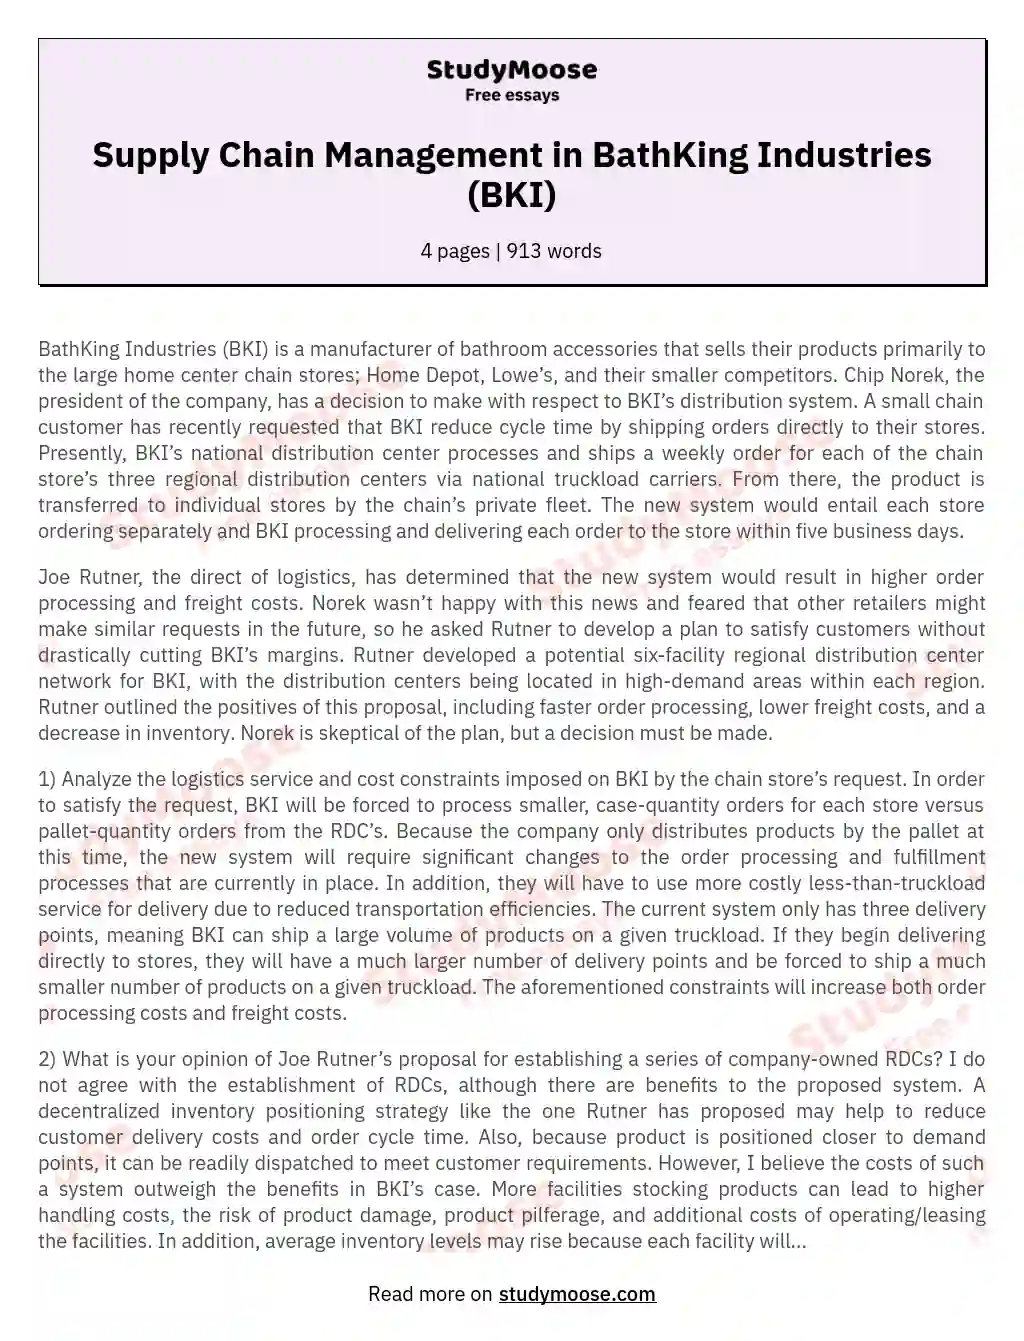 Supply Chain Management in BathKing Industries (BKI) essay